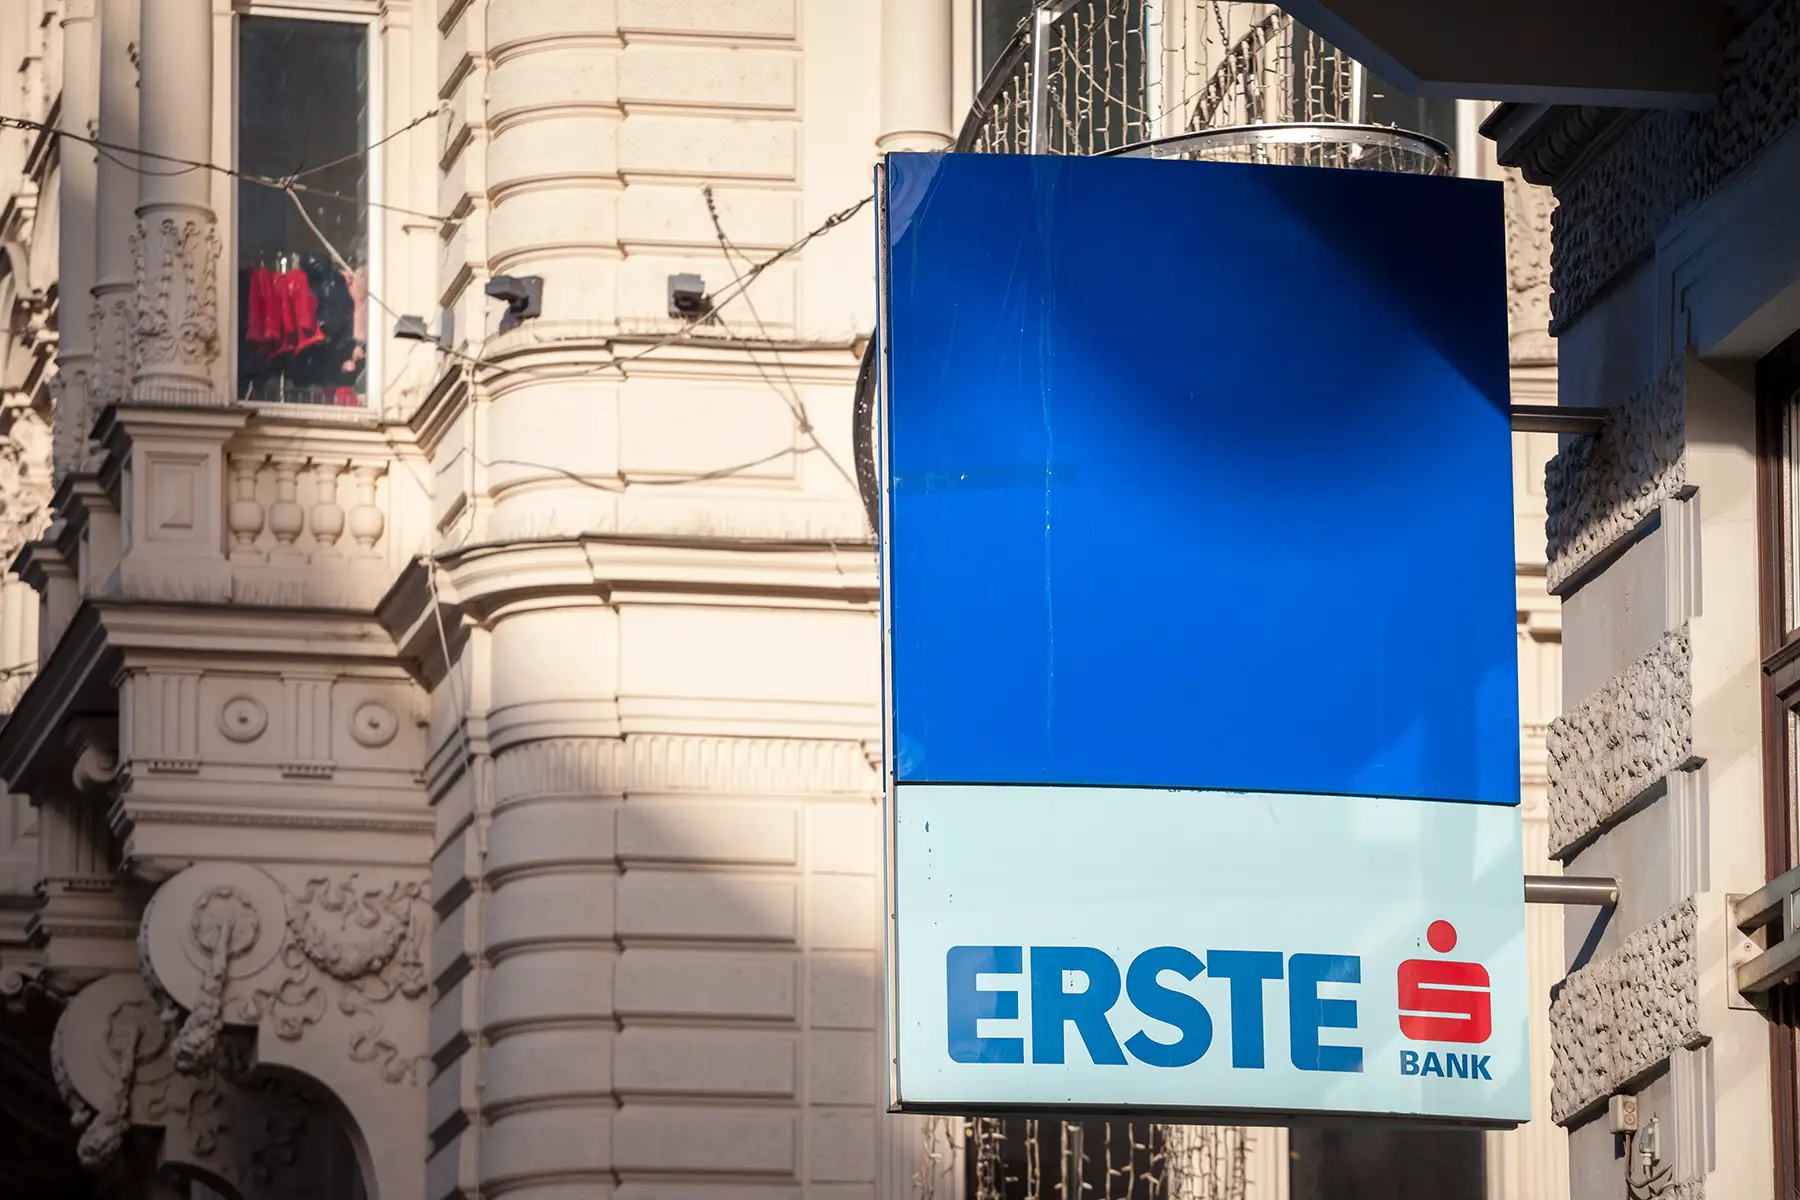 Erste Bank sign in Vienna